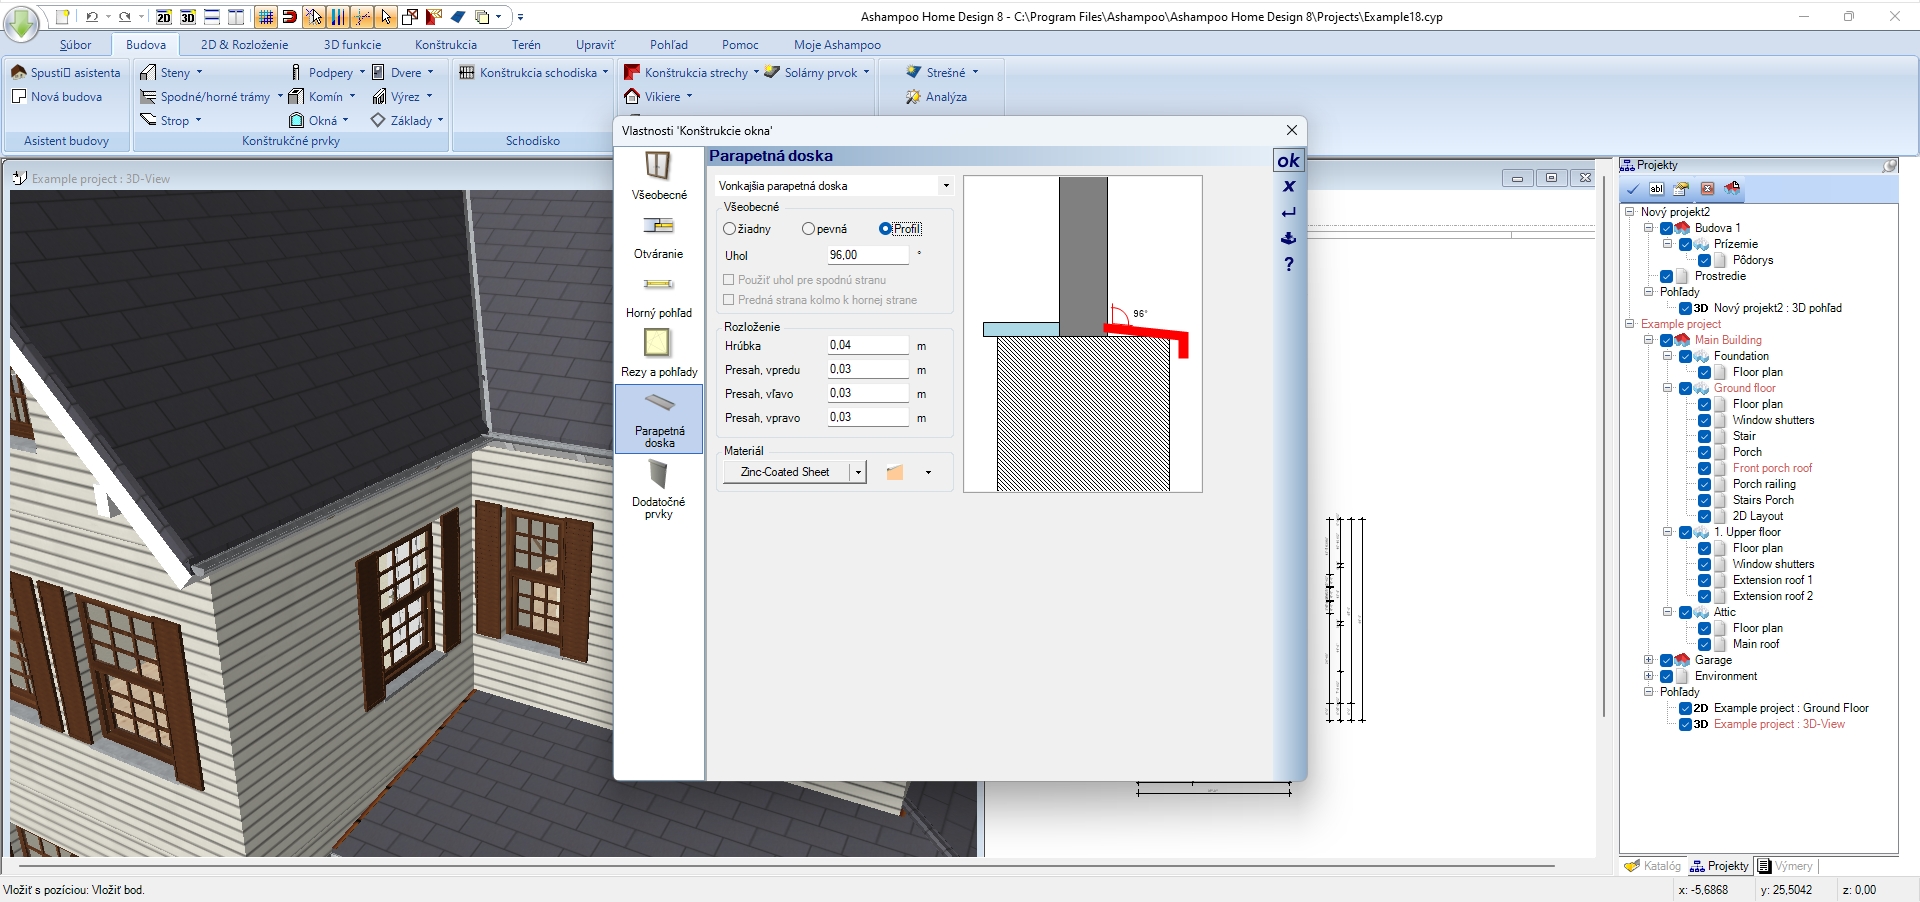 Ashampoo Home Design obsahuje rozsáhlou knihovnu exteriérových i interiérových prvků, které lze umístit do stavby a do nejmenších detailů nastavit. Například u oken lze určit nejen jejich rozměr a typ, ale také způsob otevírání, barvu rámu a dokonce i typ otevírací kličky a parapetu. | Zdroj: Home Design 8